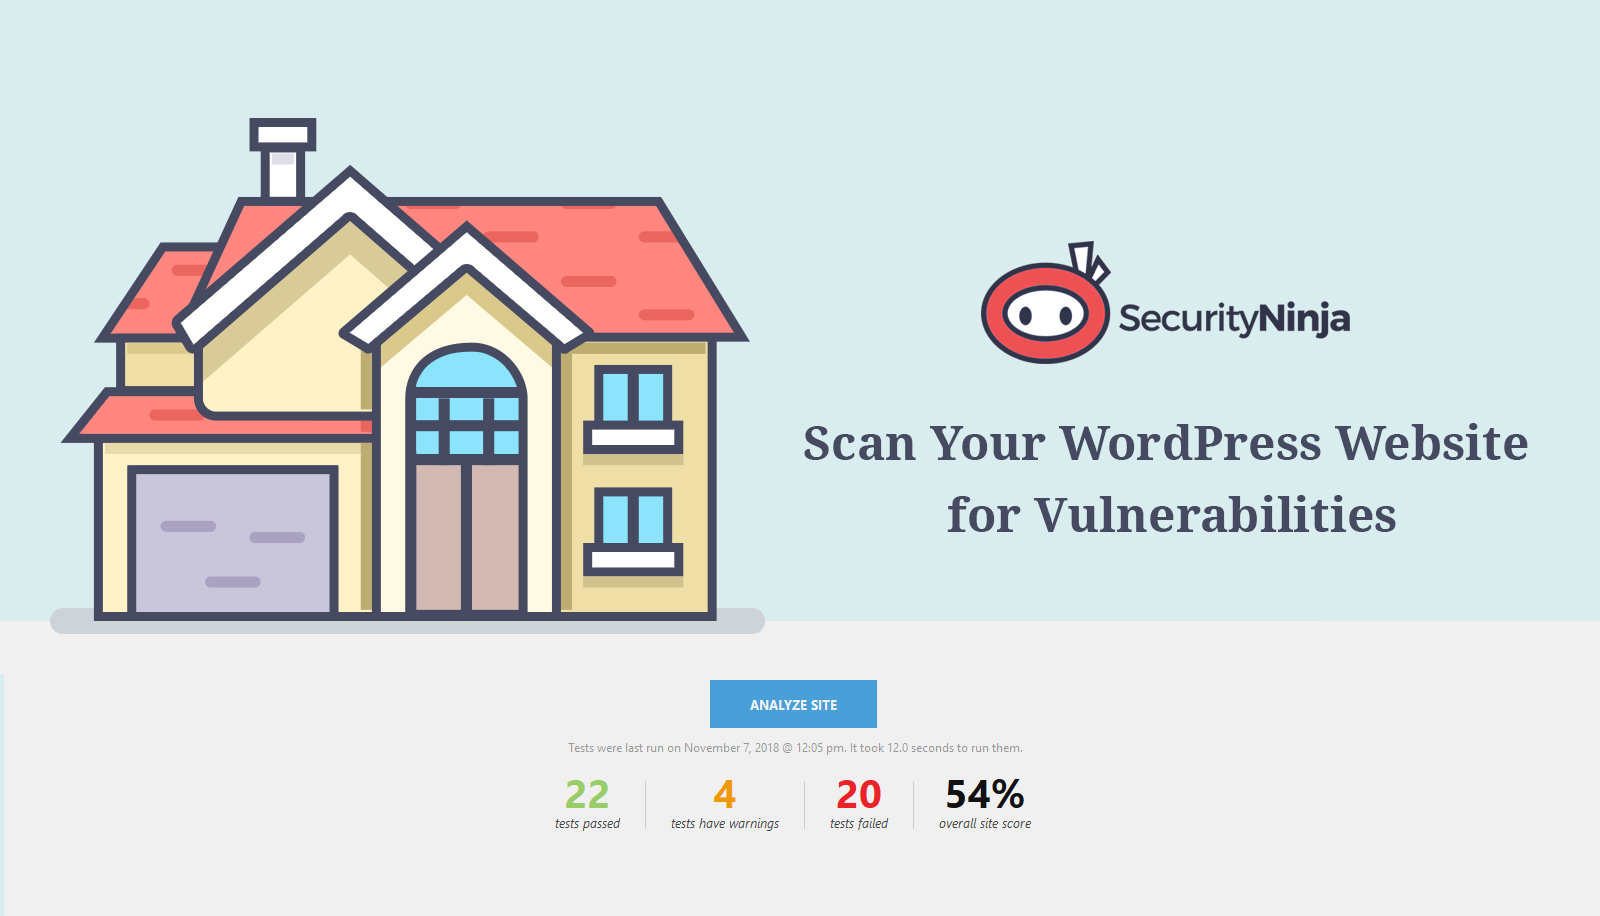 Security Ninja – Secure Firewall & Secure Malware Scanner – WordPress  plugin